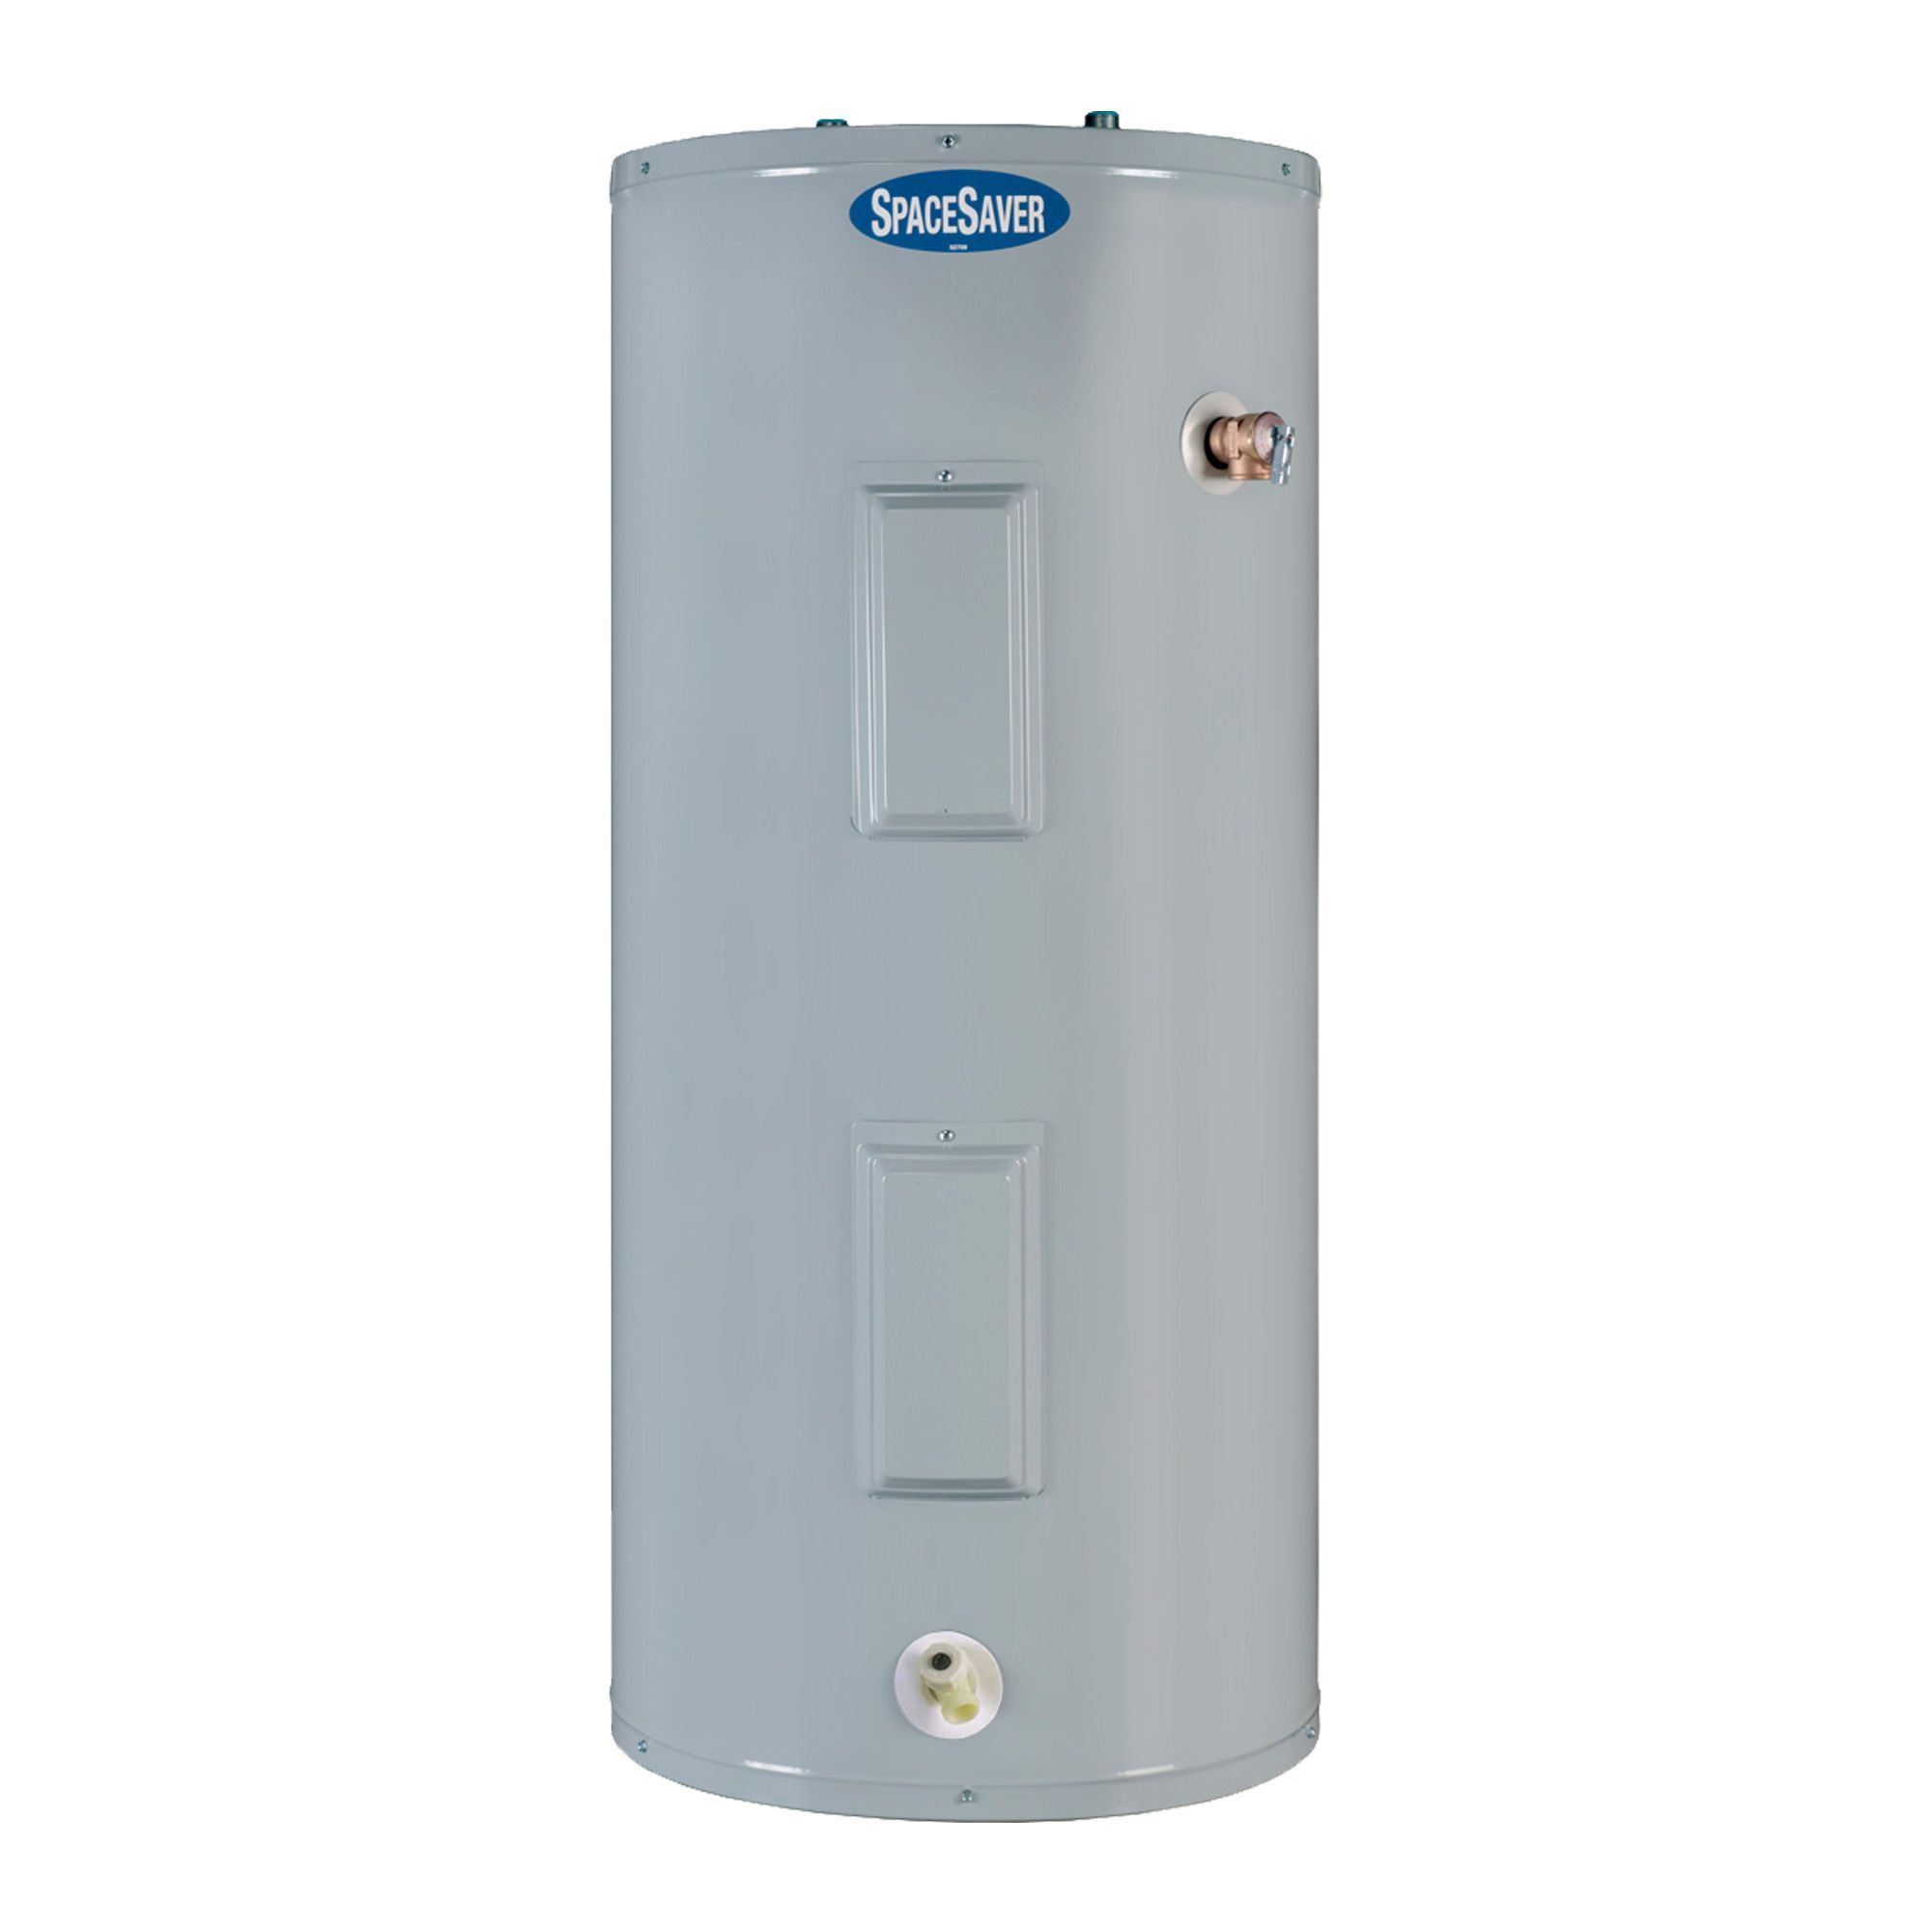 Cascade Water Heater - 40-Gallon